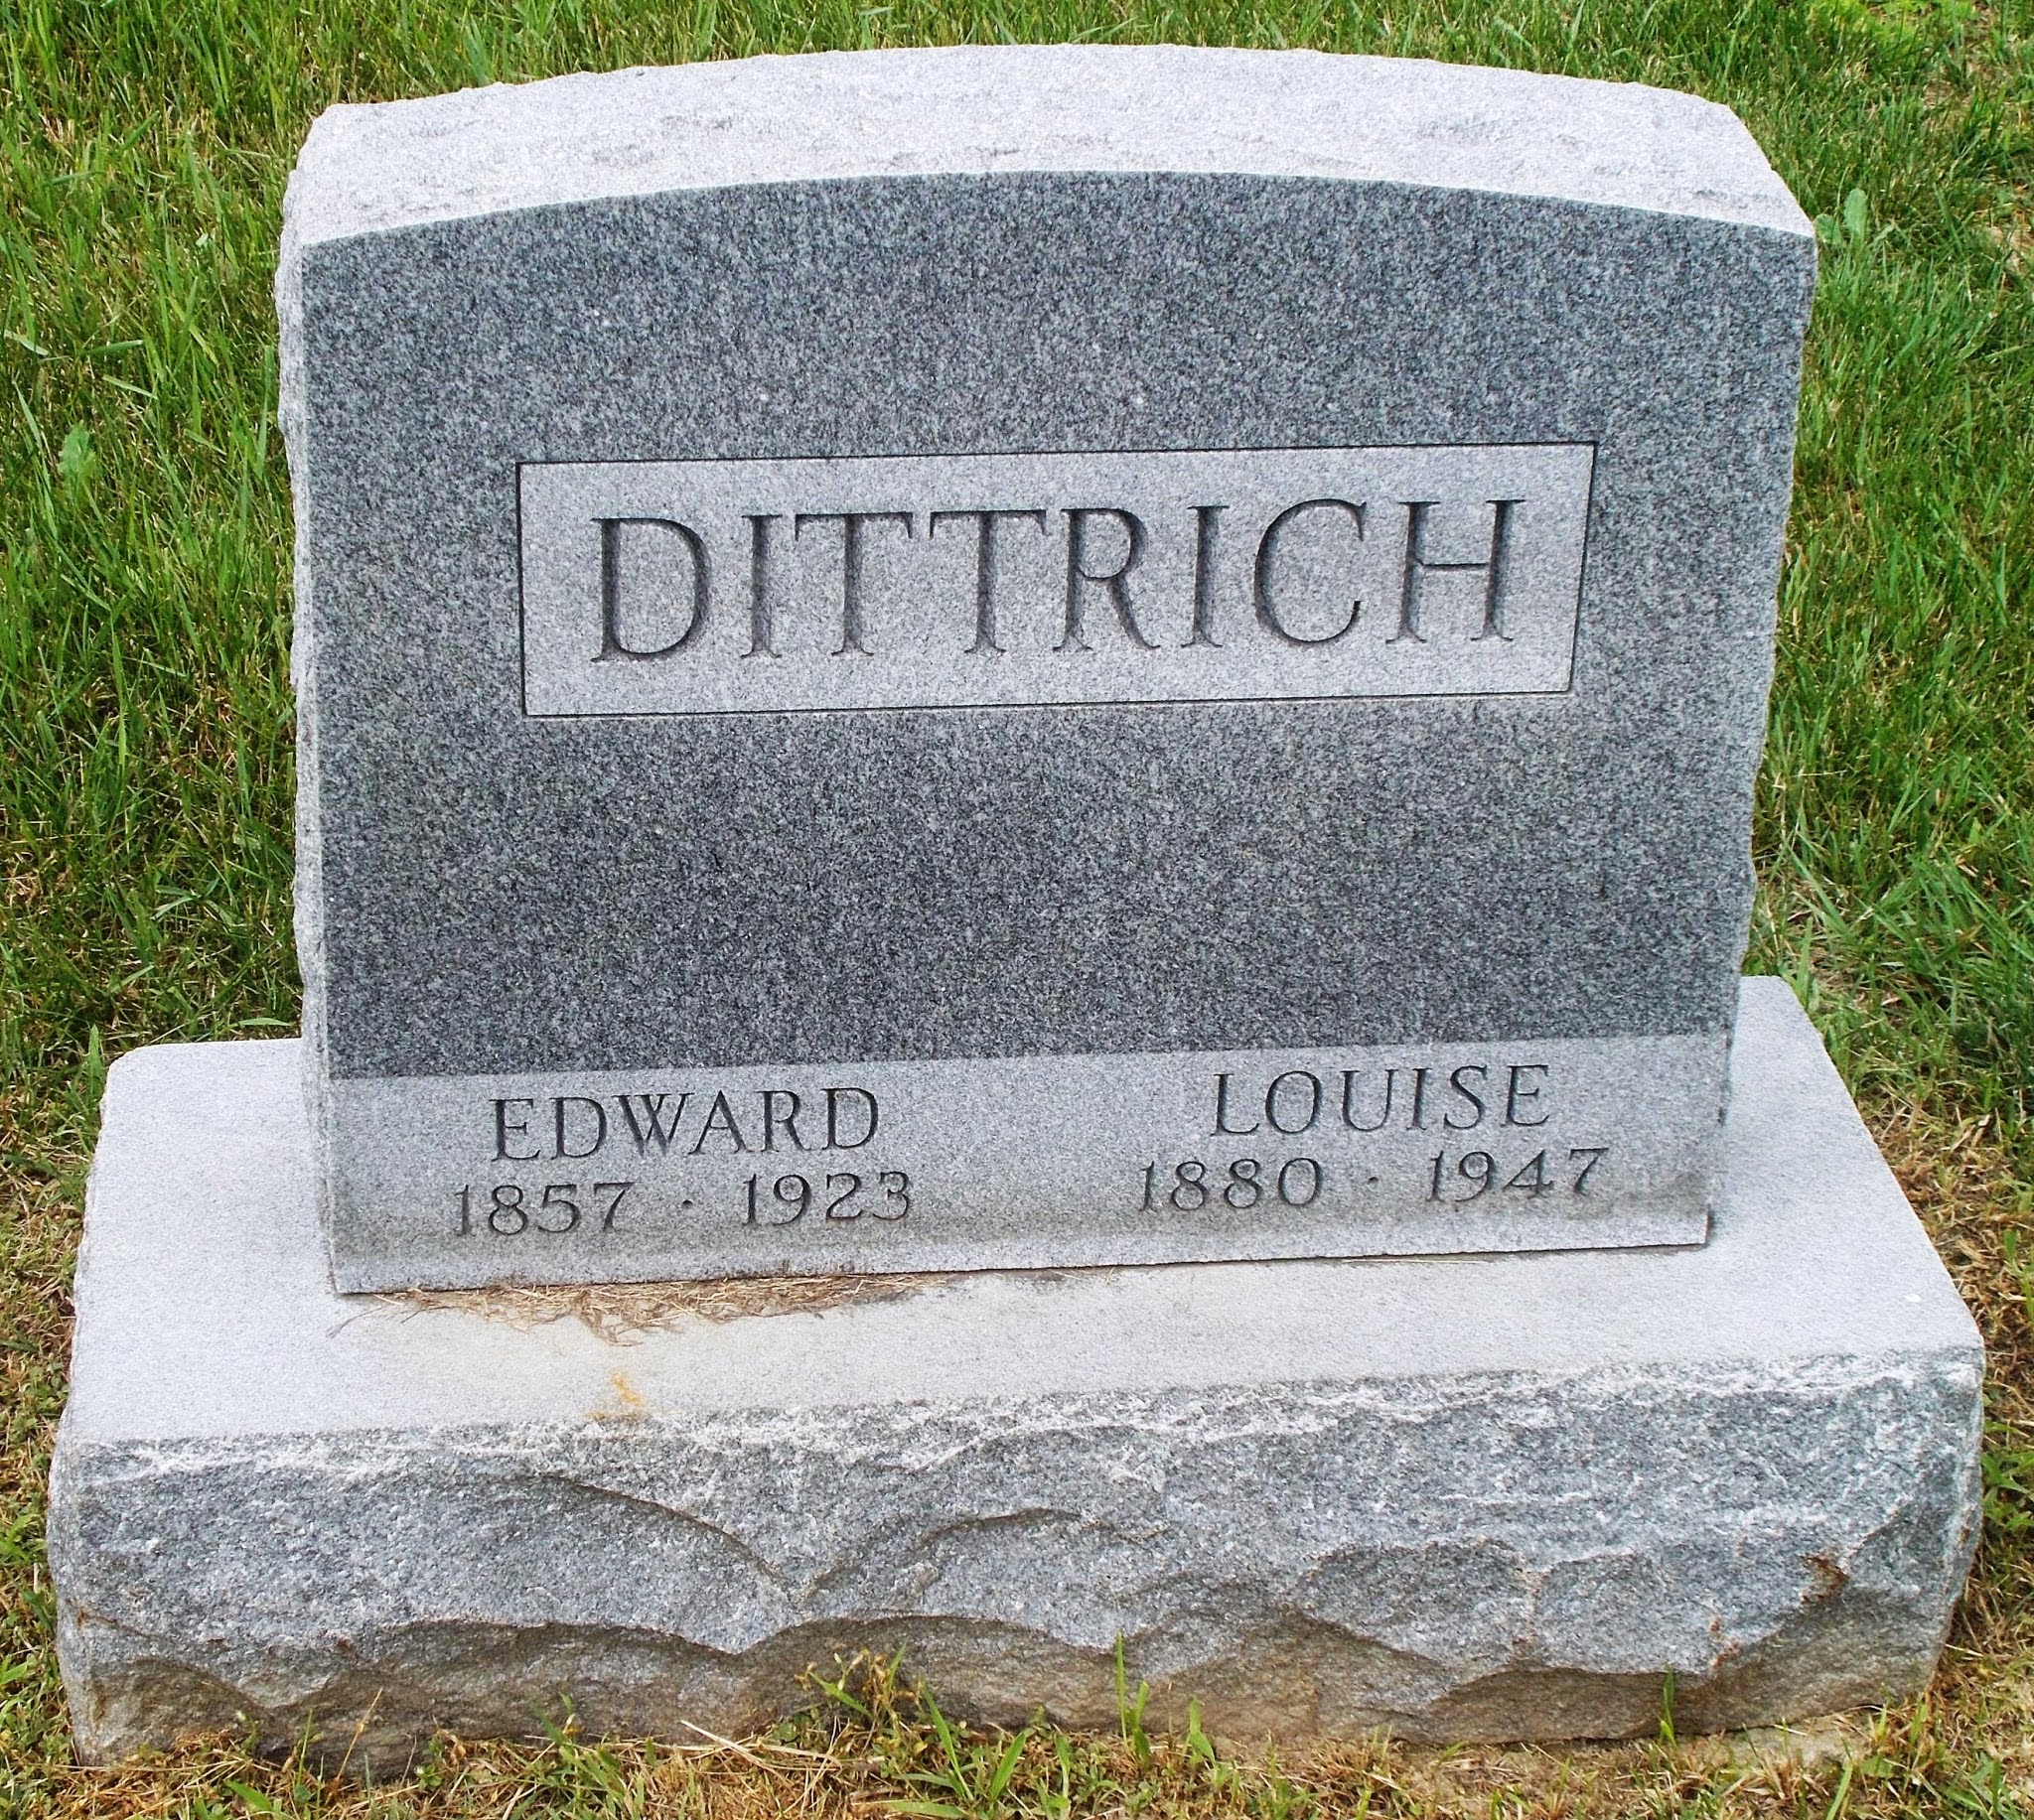 Edward Dittrich